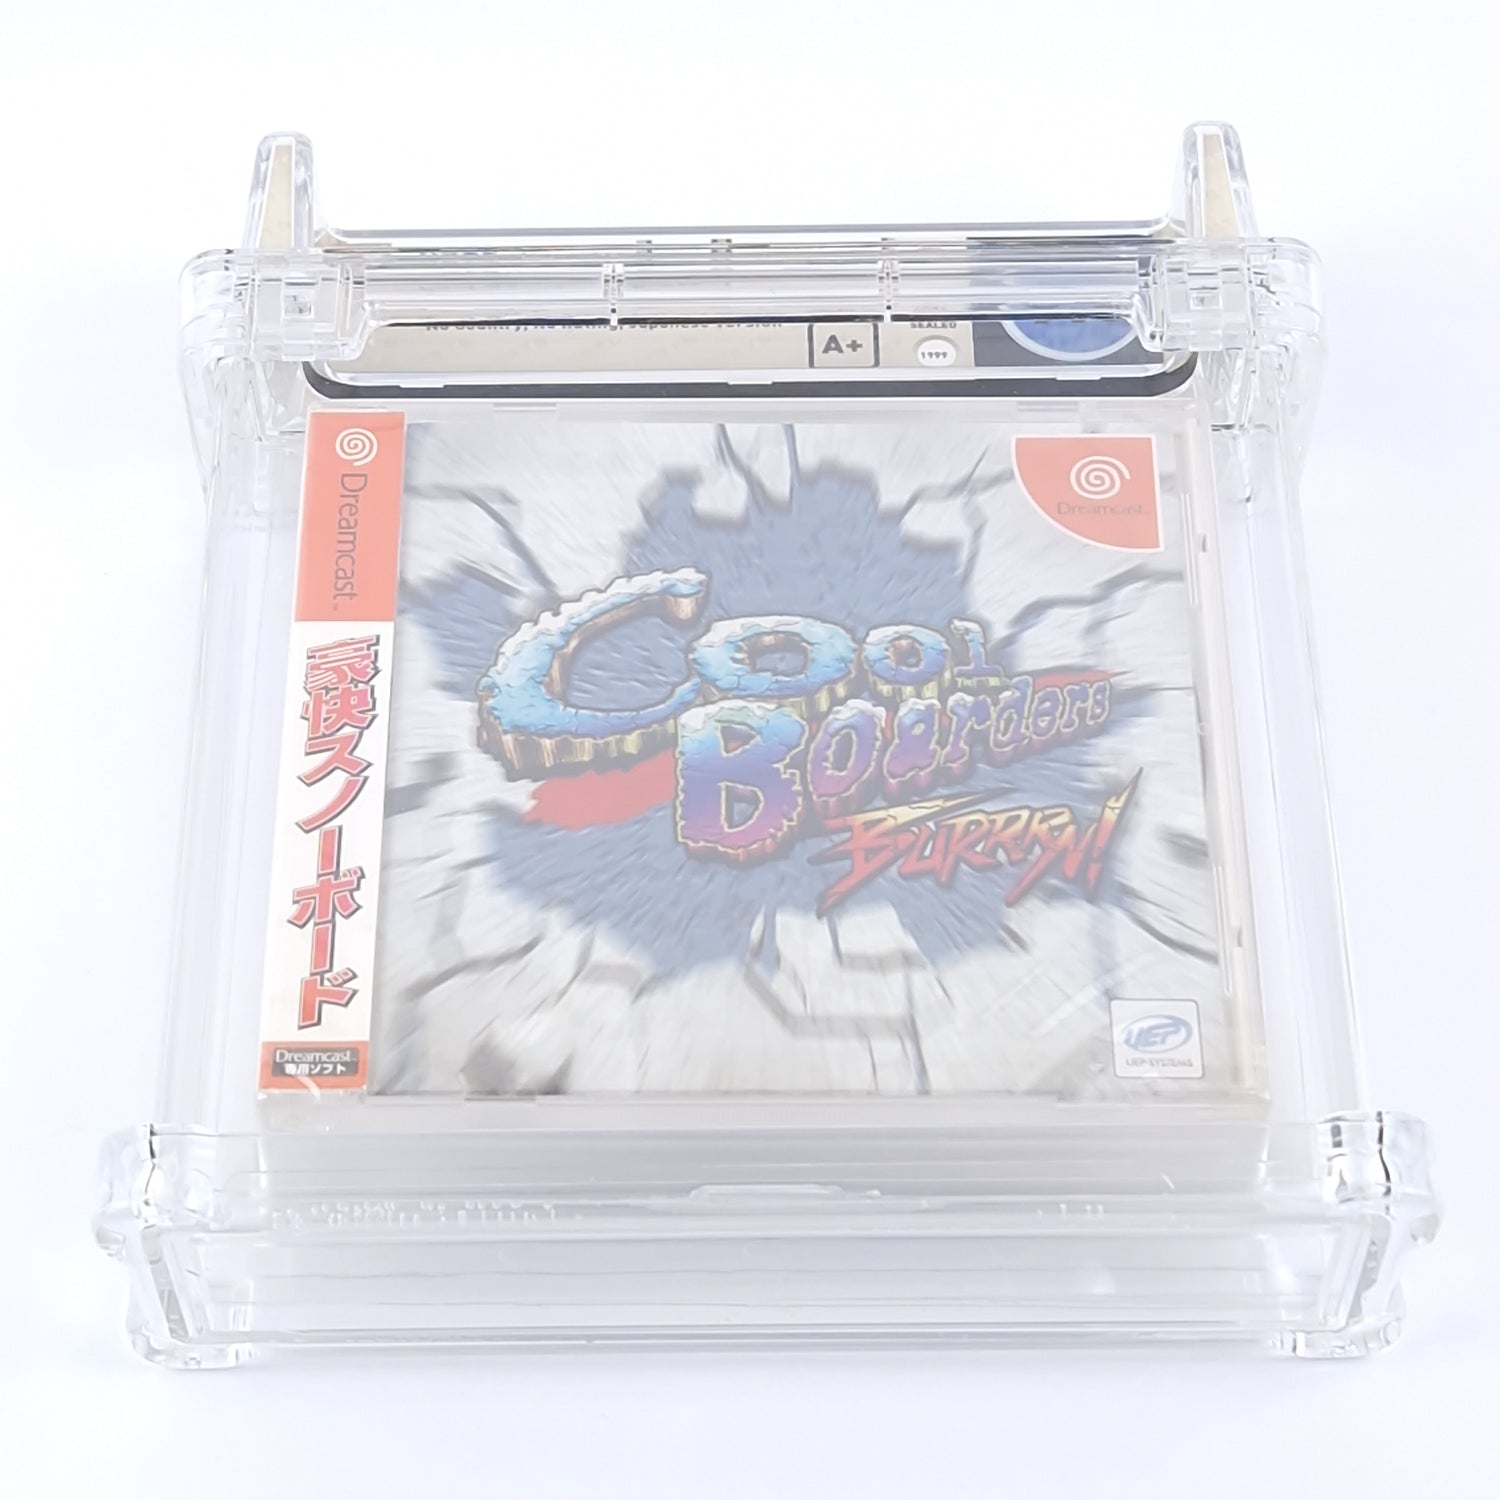 Sega Dreamcast Game: Cool Boarders Burrrn! - NEW SEALED | WATA Games 9.8 A+